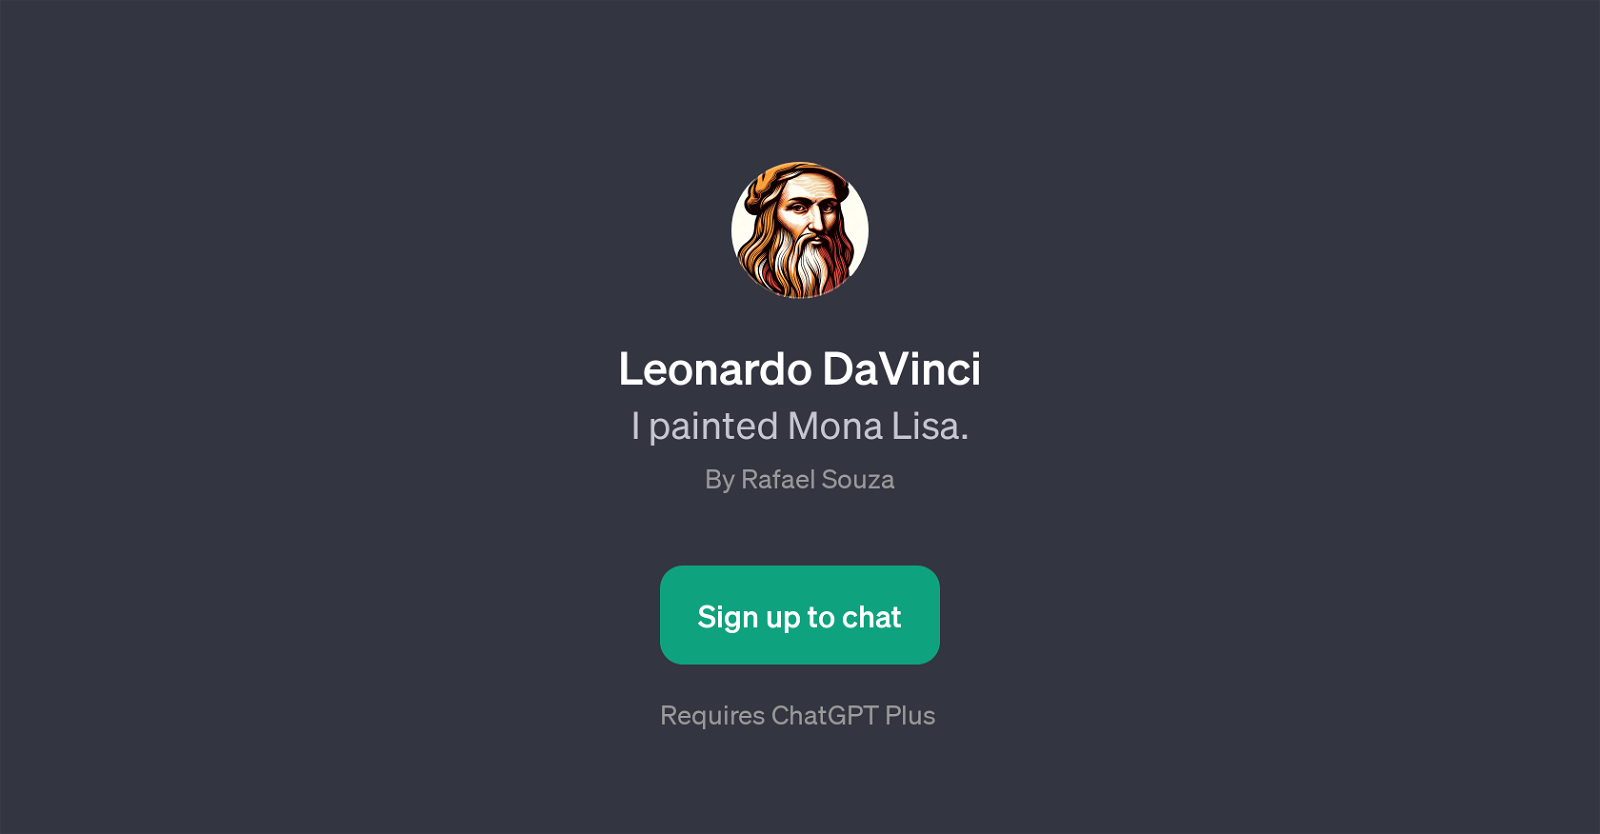 Leonardo DaVinci website